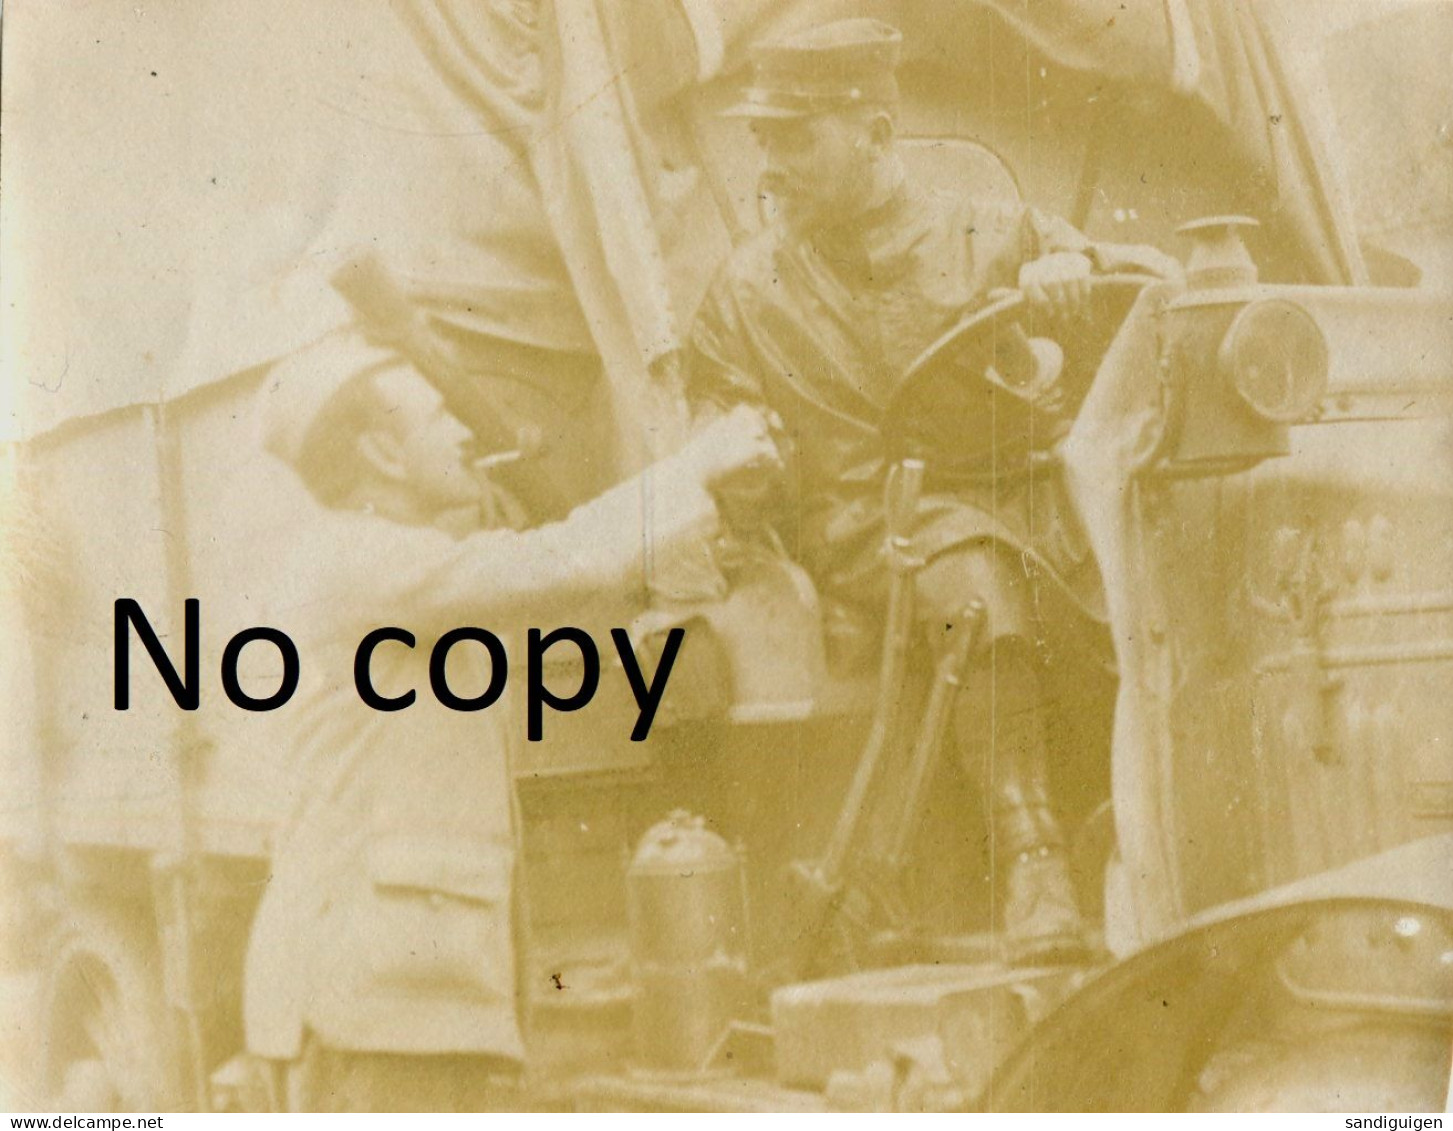 PHOTO FRANCAISE - CAMION DE LA TM 215 AU CHATEAU A OGNON PRES DE BARBERY - SENLIS OISE GUERRE 1914 1918 - War, Military